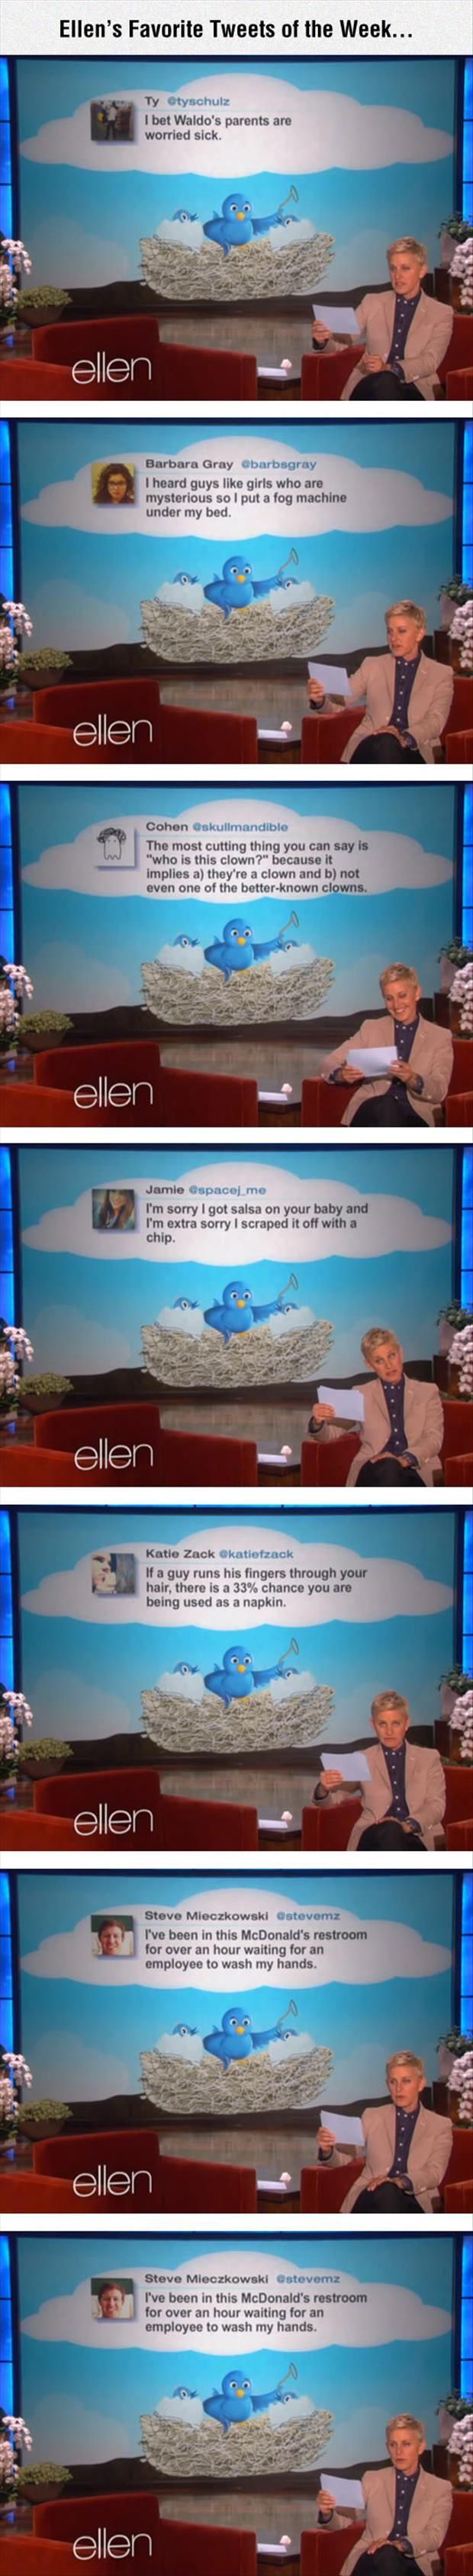 Ellen Tweets